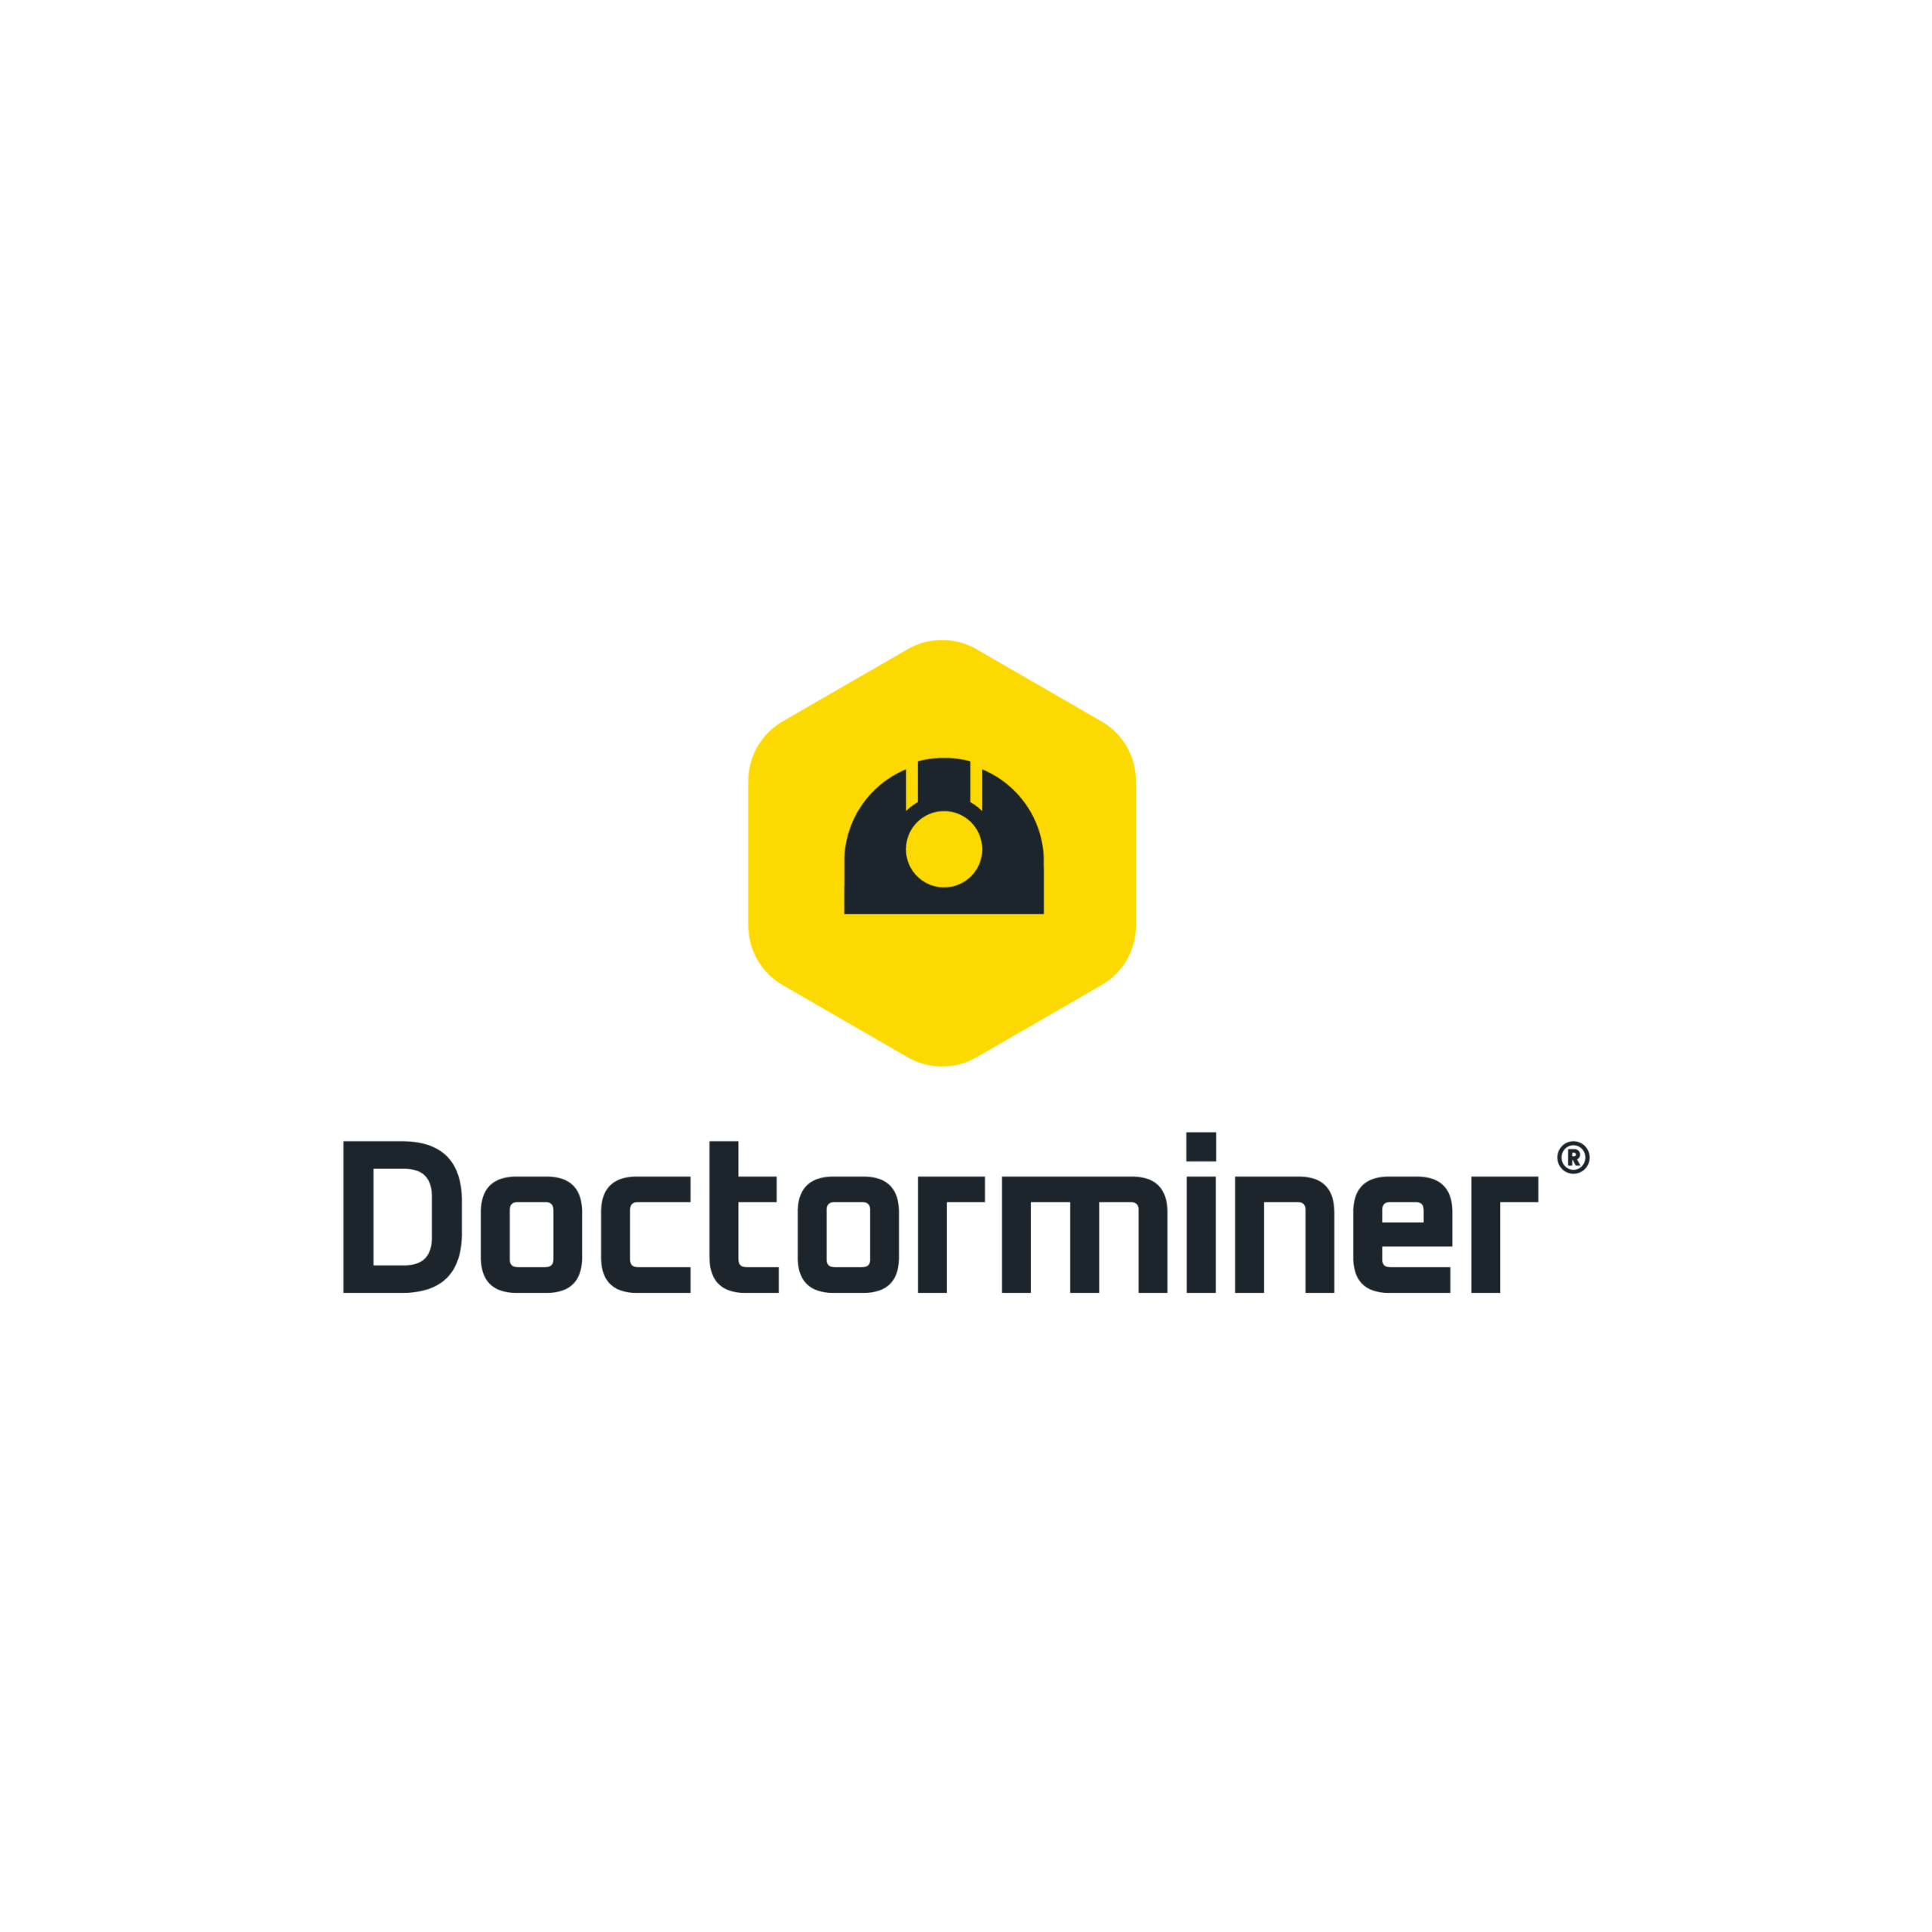 Doctorminer